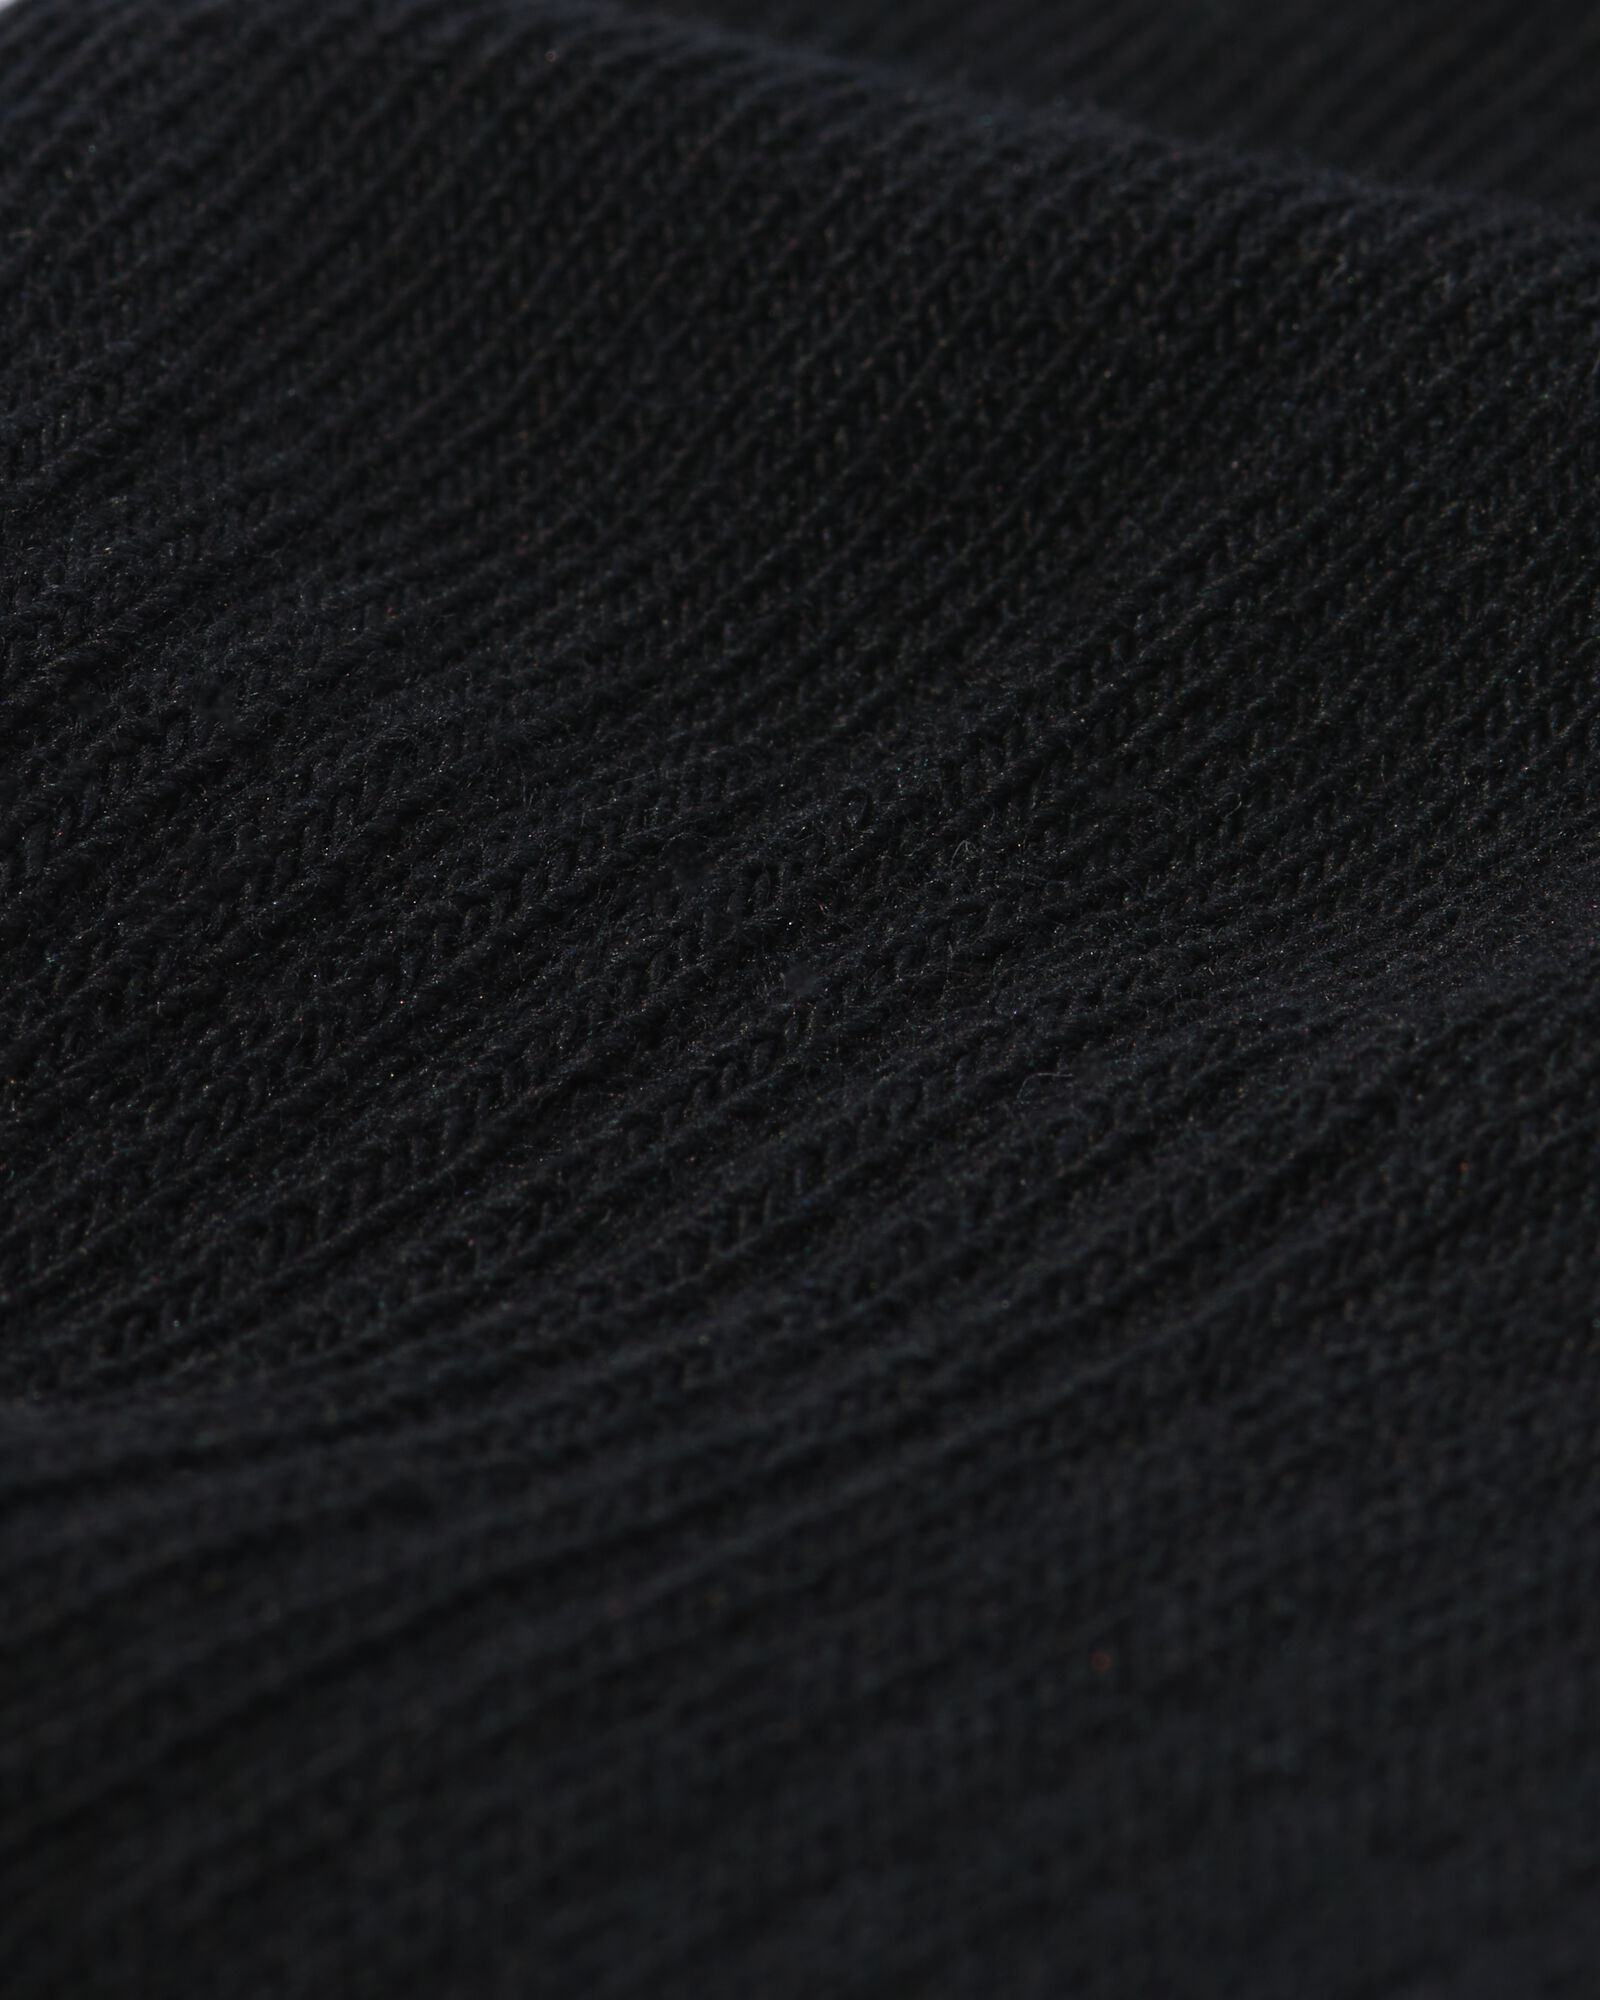 5 paires de socquettes femme sport allround avec tissu éponge noir 35/38 - 4430011 - HEMA